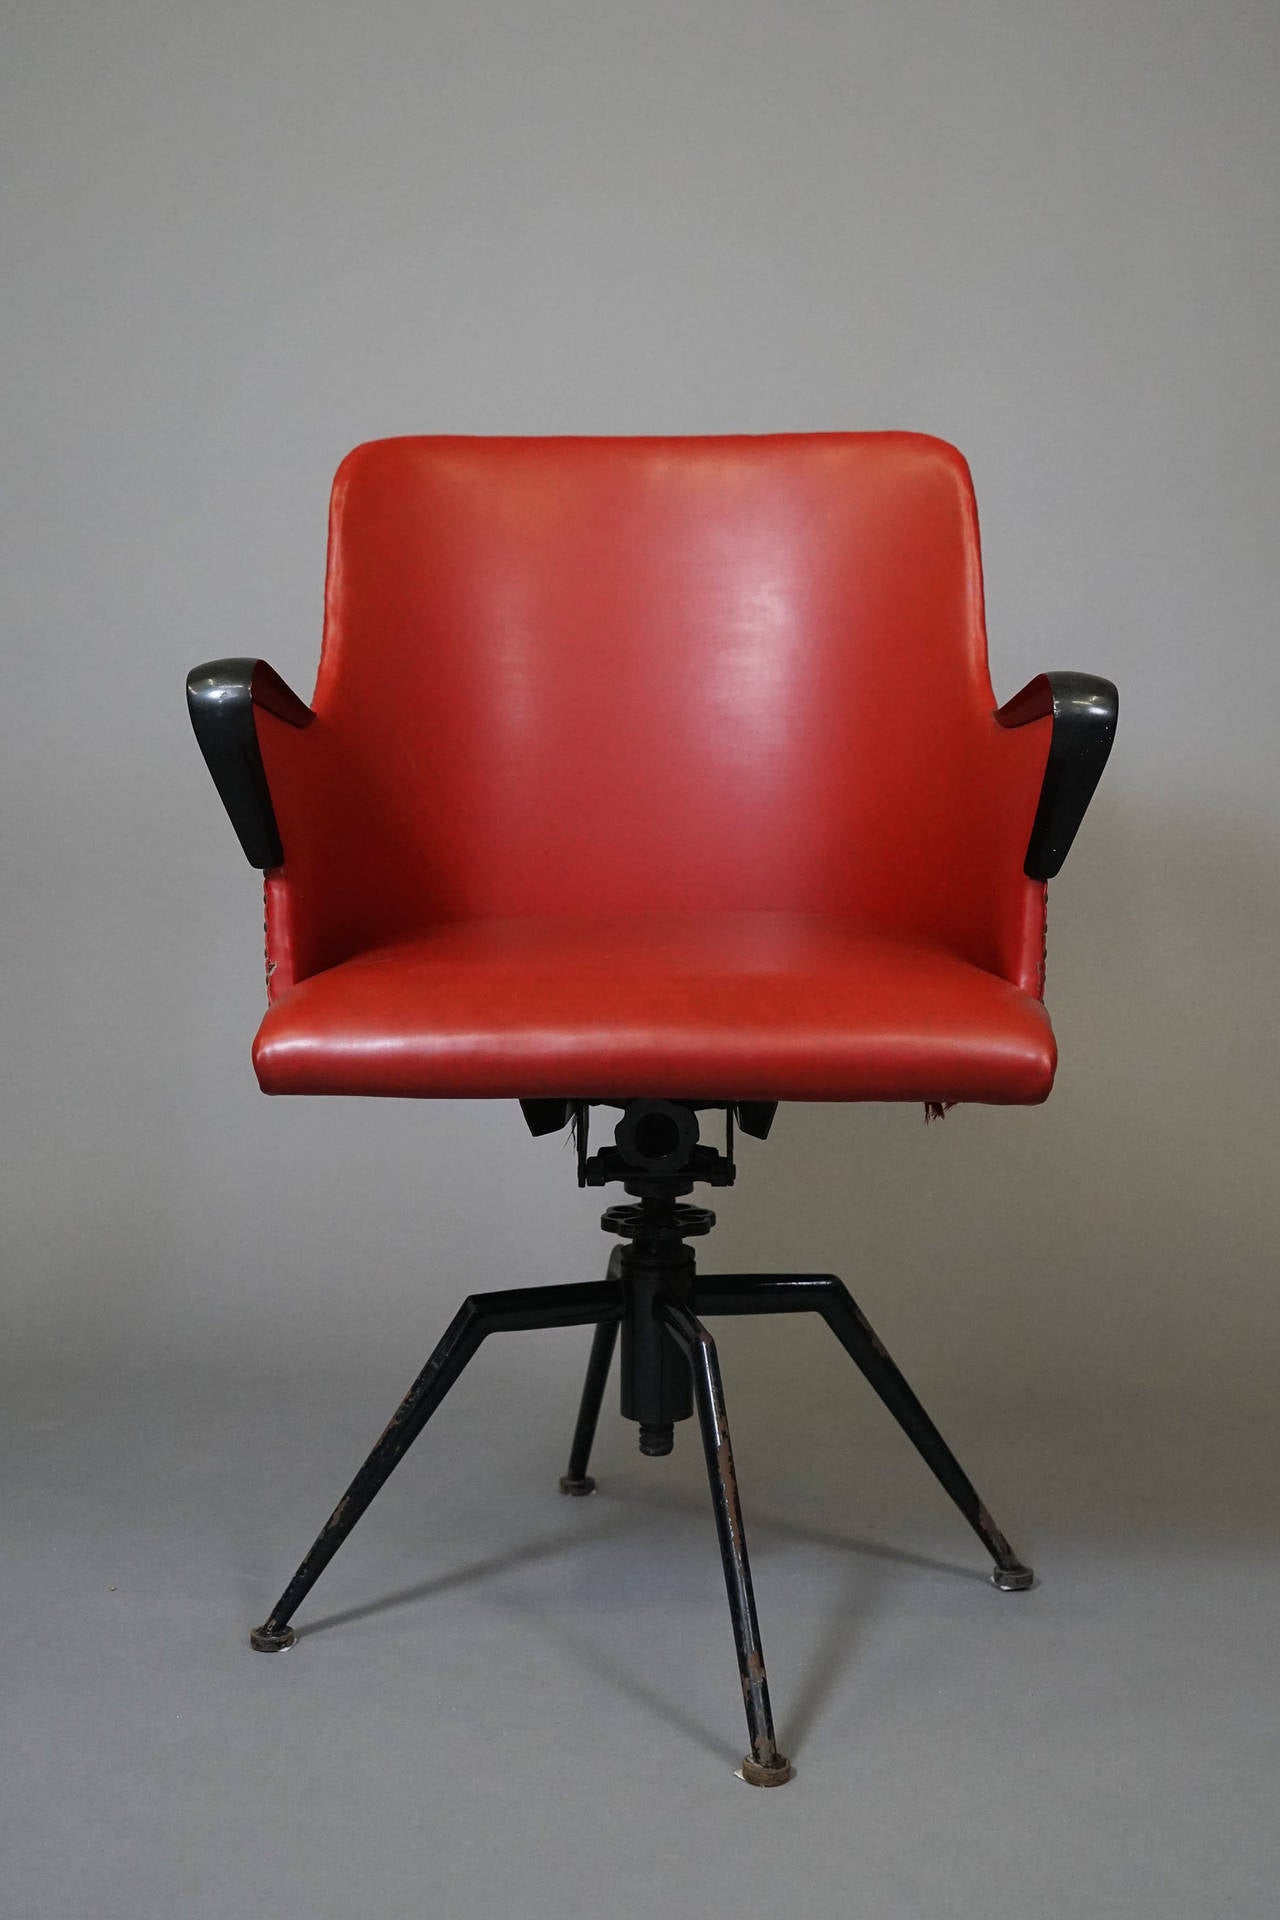 Italian Swivel Chair by Osvaldo Borsani for Tecno Milano, 1954